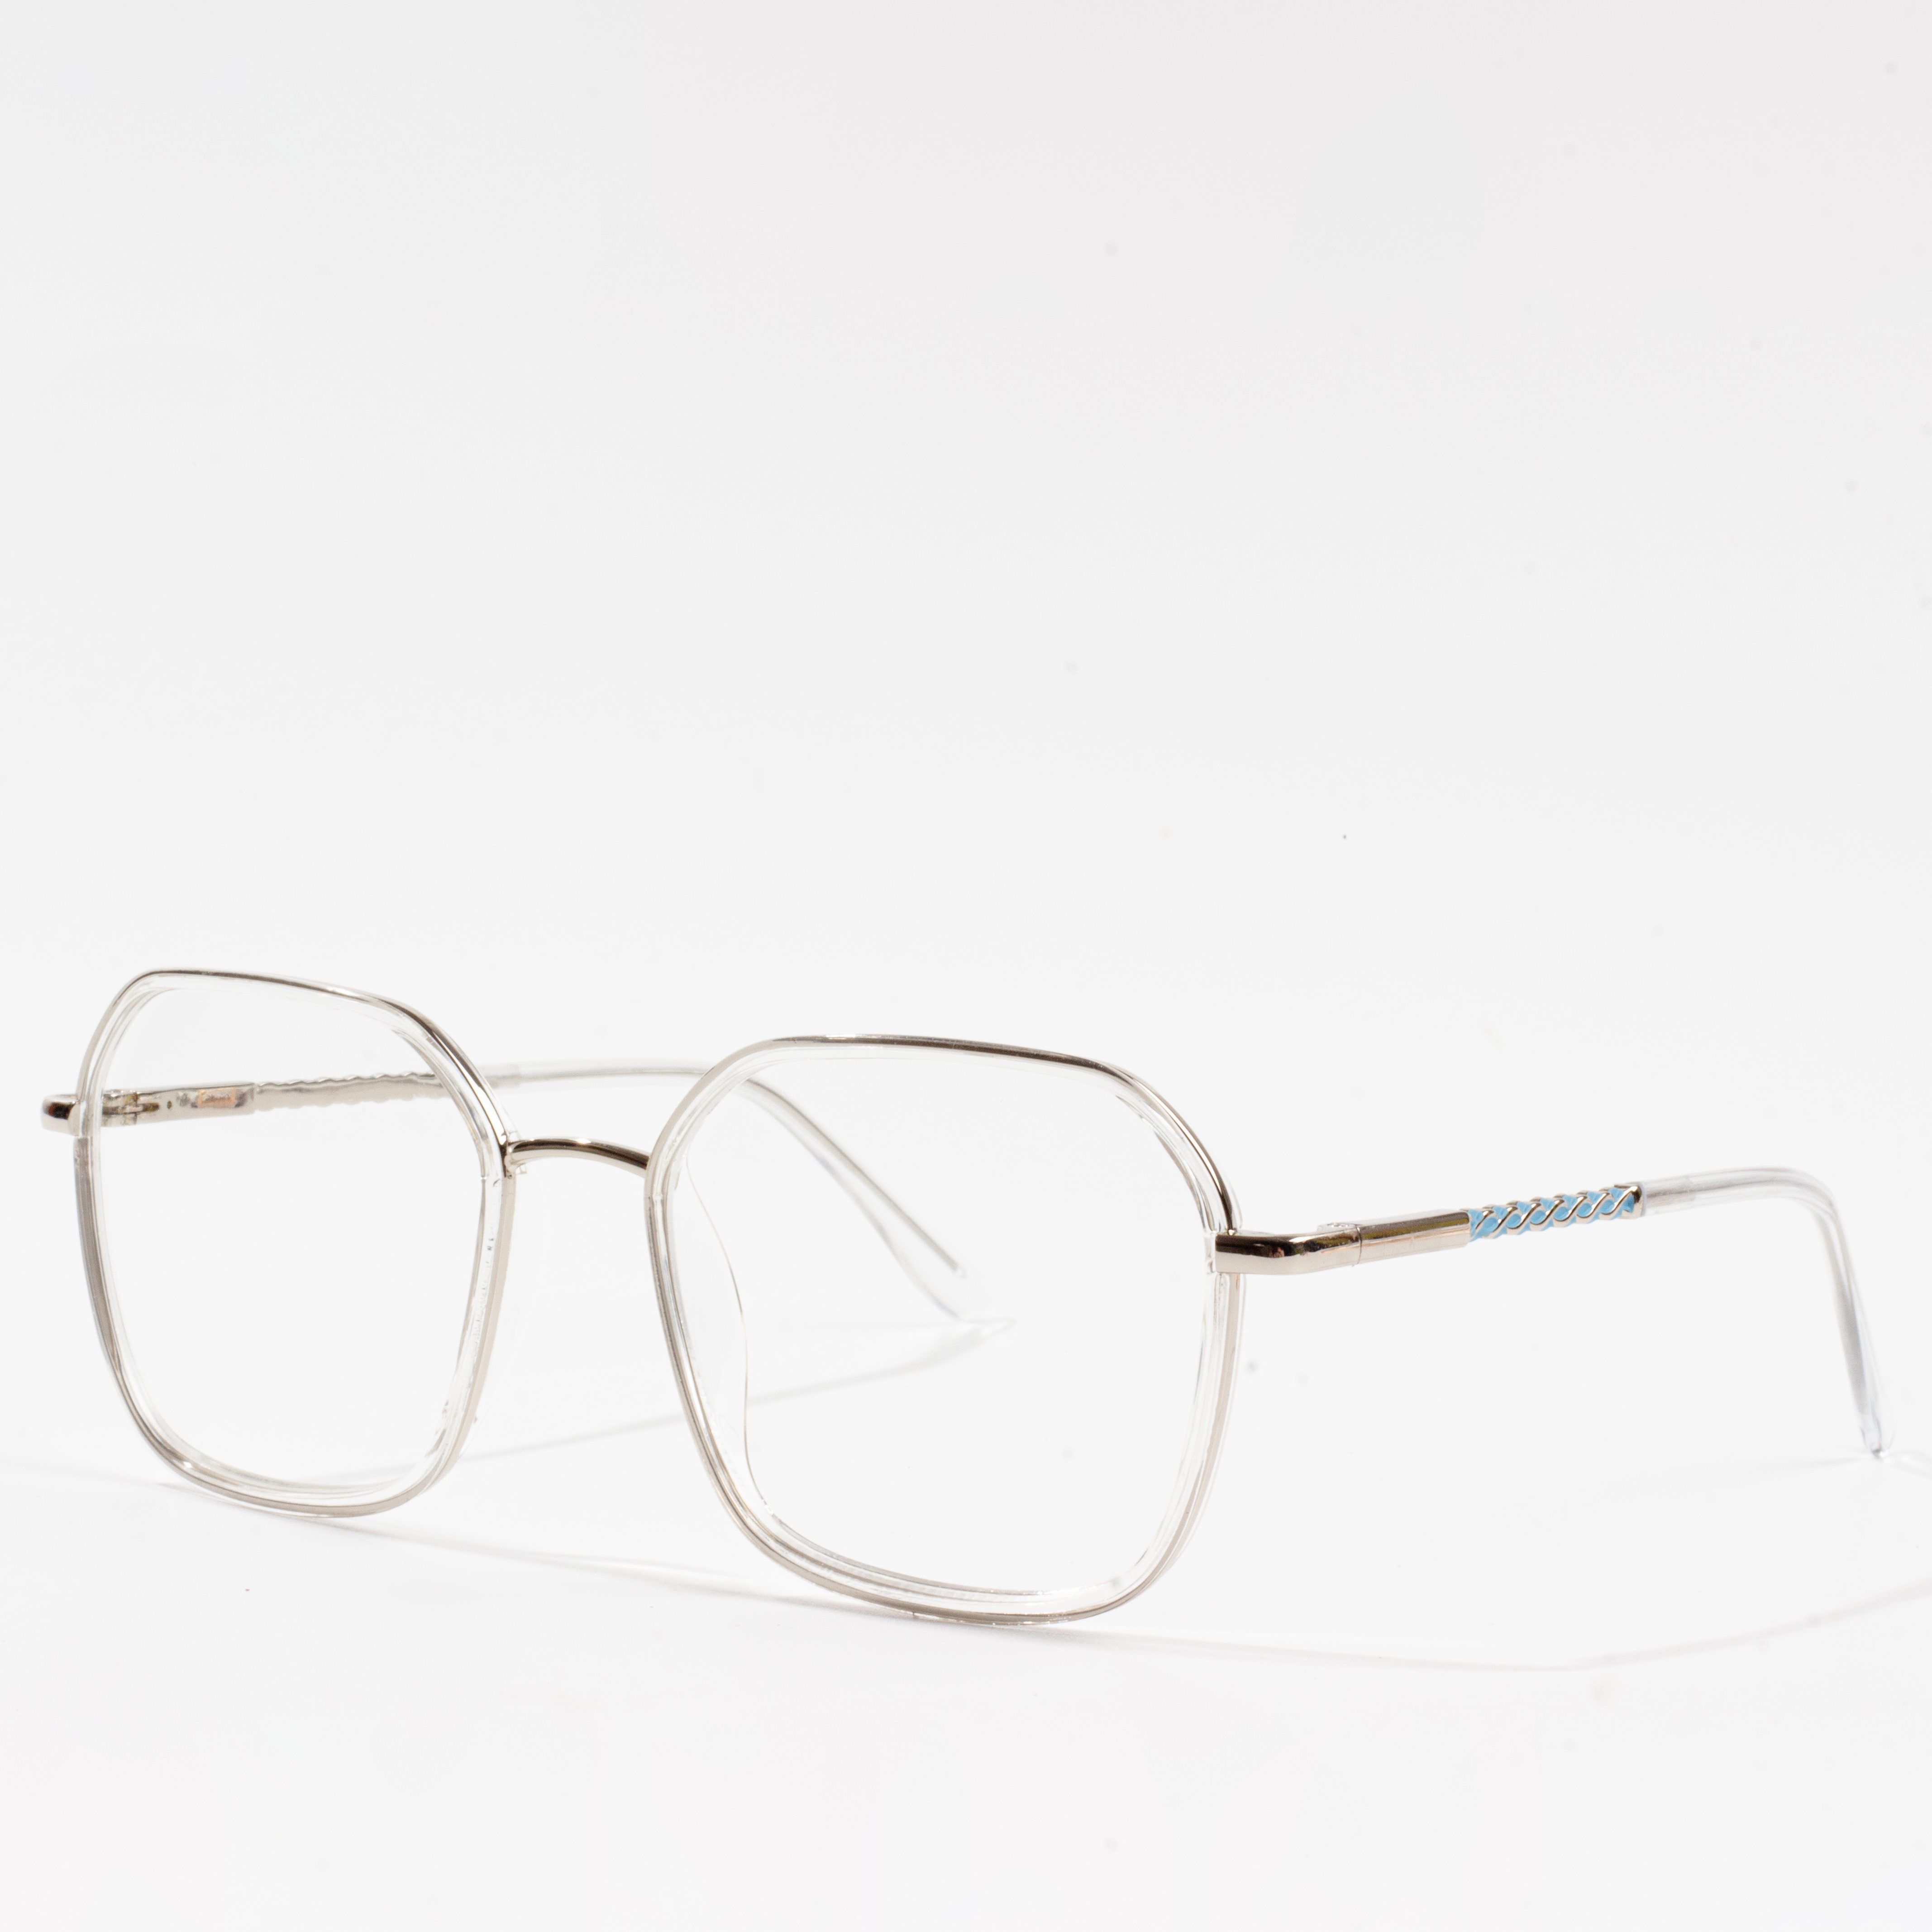 eyeglasses frame for round face